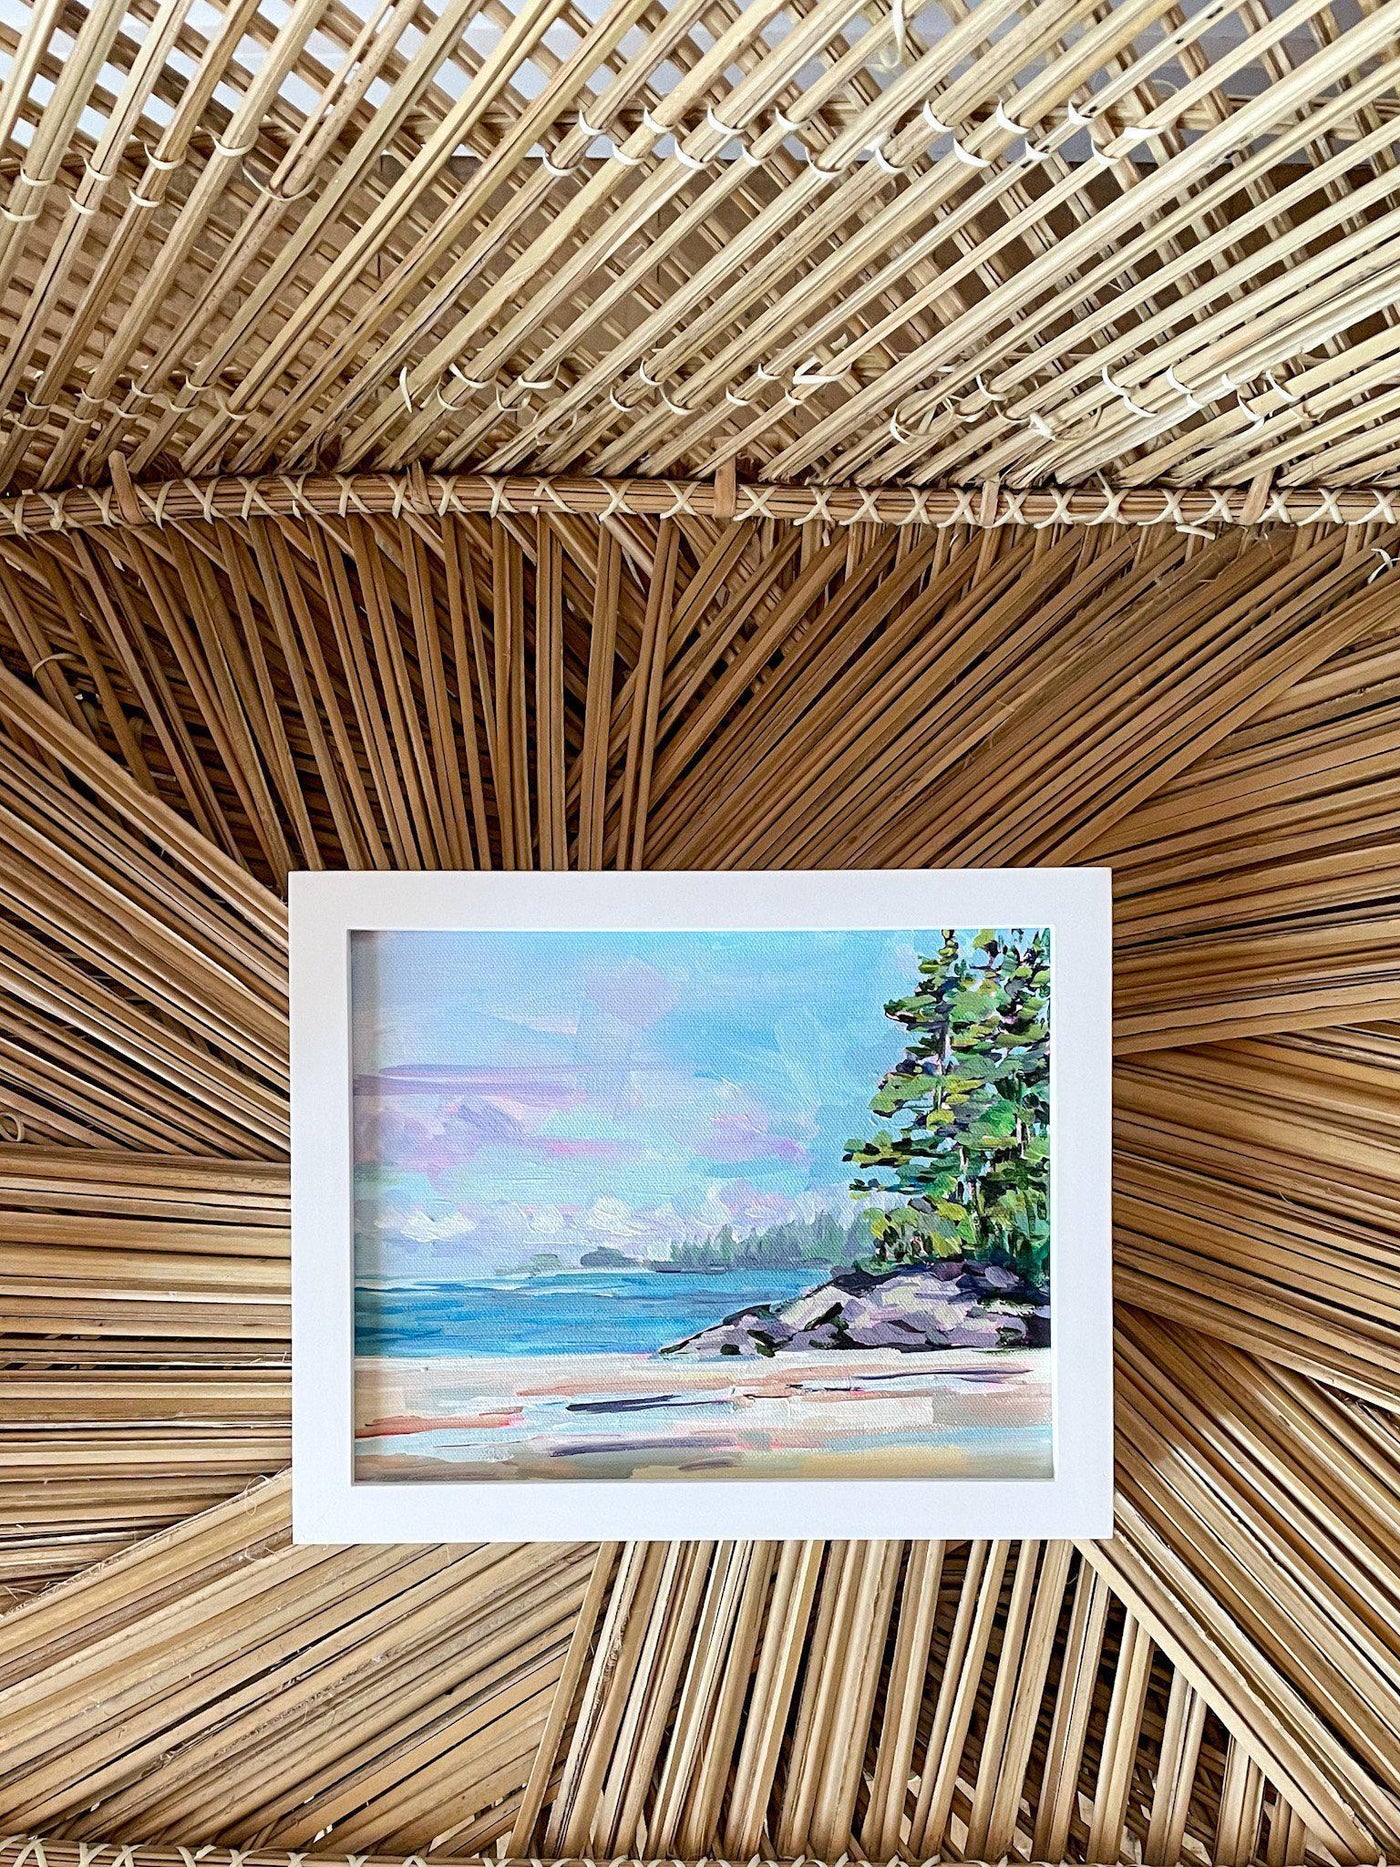 Middle Beach I, Tofino | Original Painting | 8x10-Original Painting-Amy Dixon Art + Design